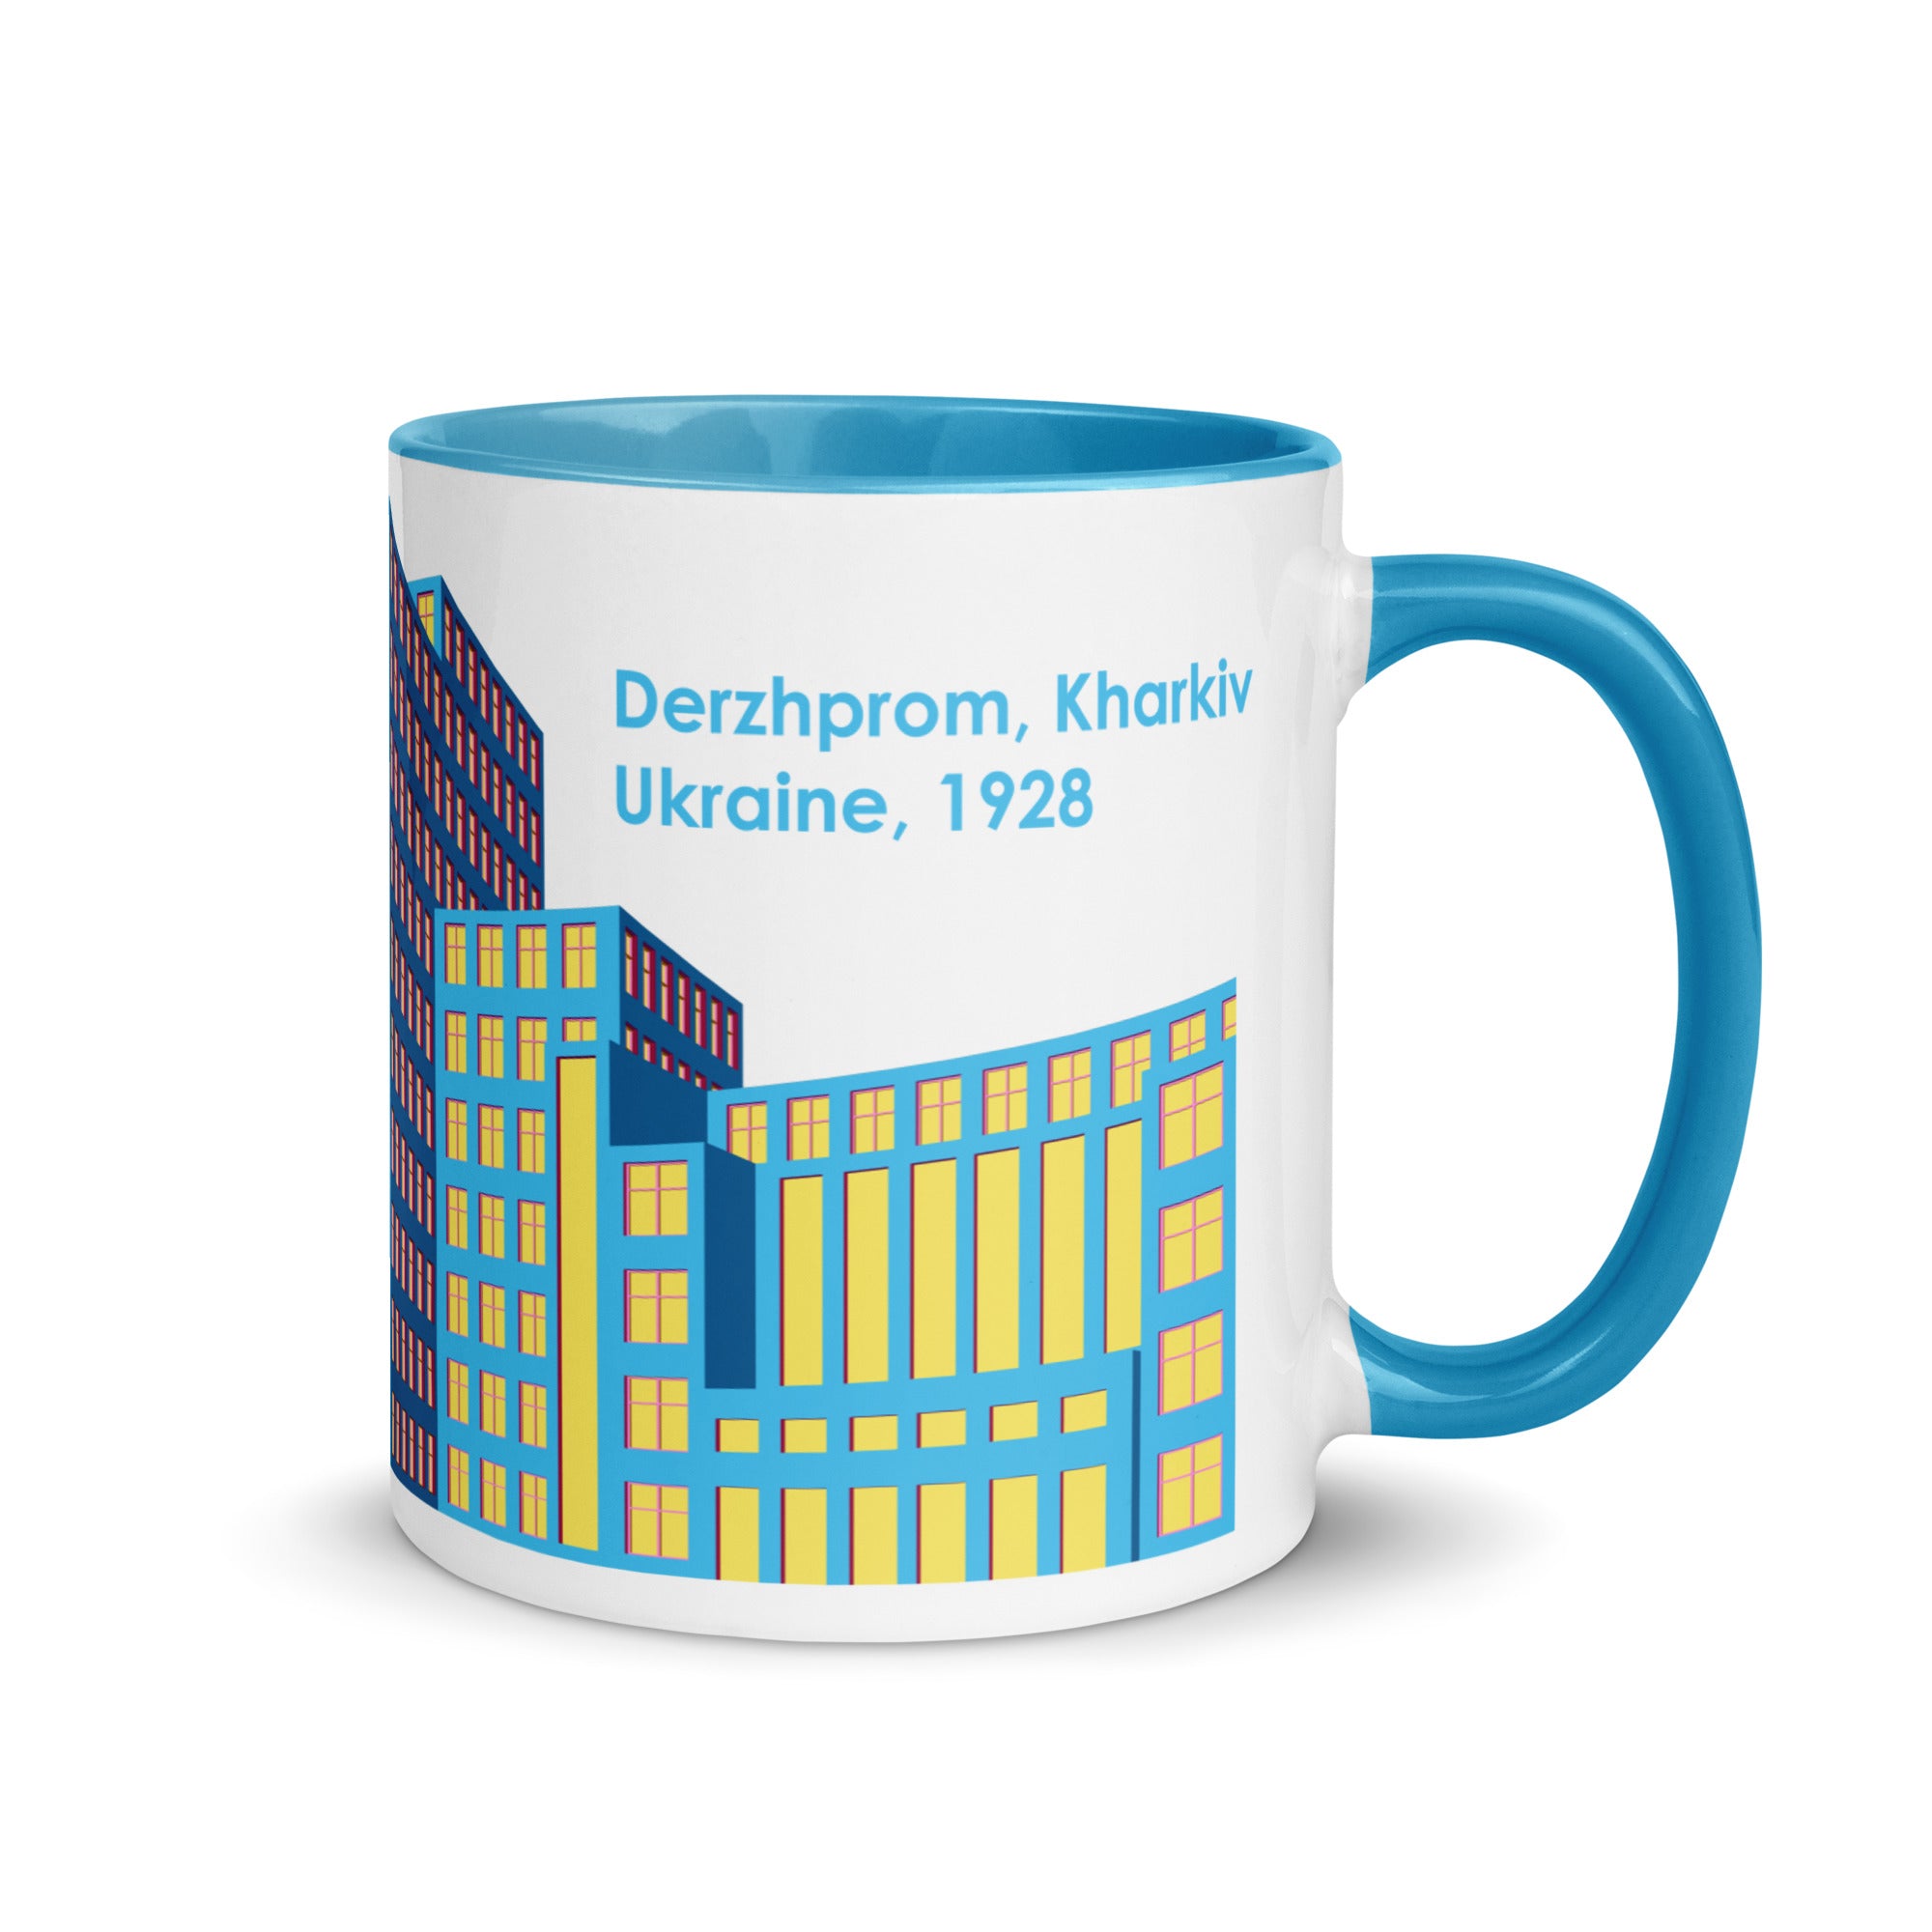 Derzhprom Pink or Yellow Mug